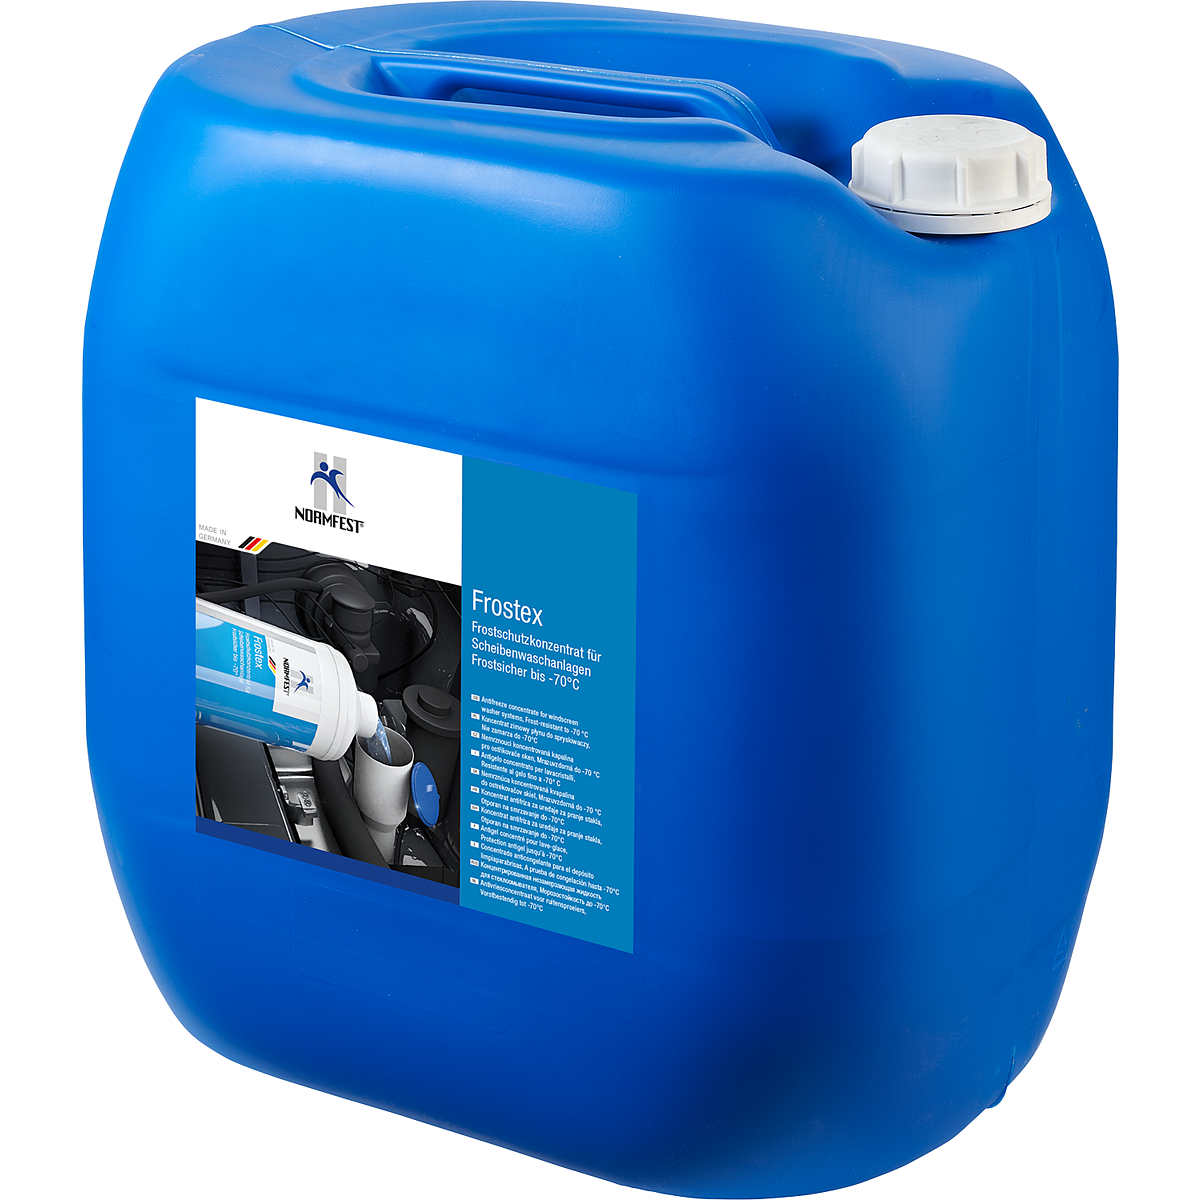 Frostschutzmittel Scheibenwaschanlage (-30 Grad) - 2,3 Liter